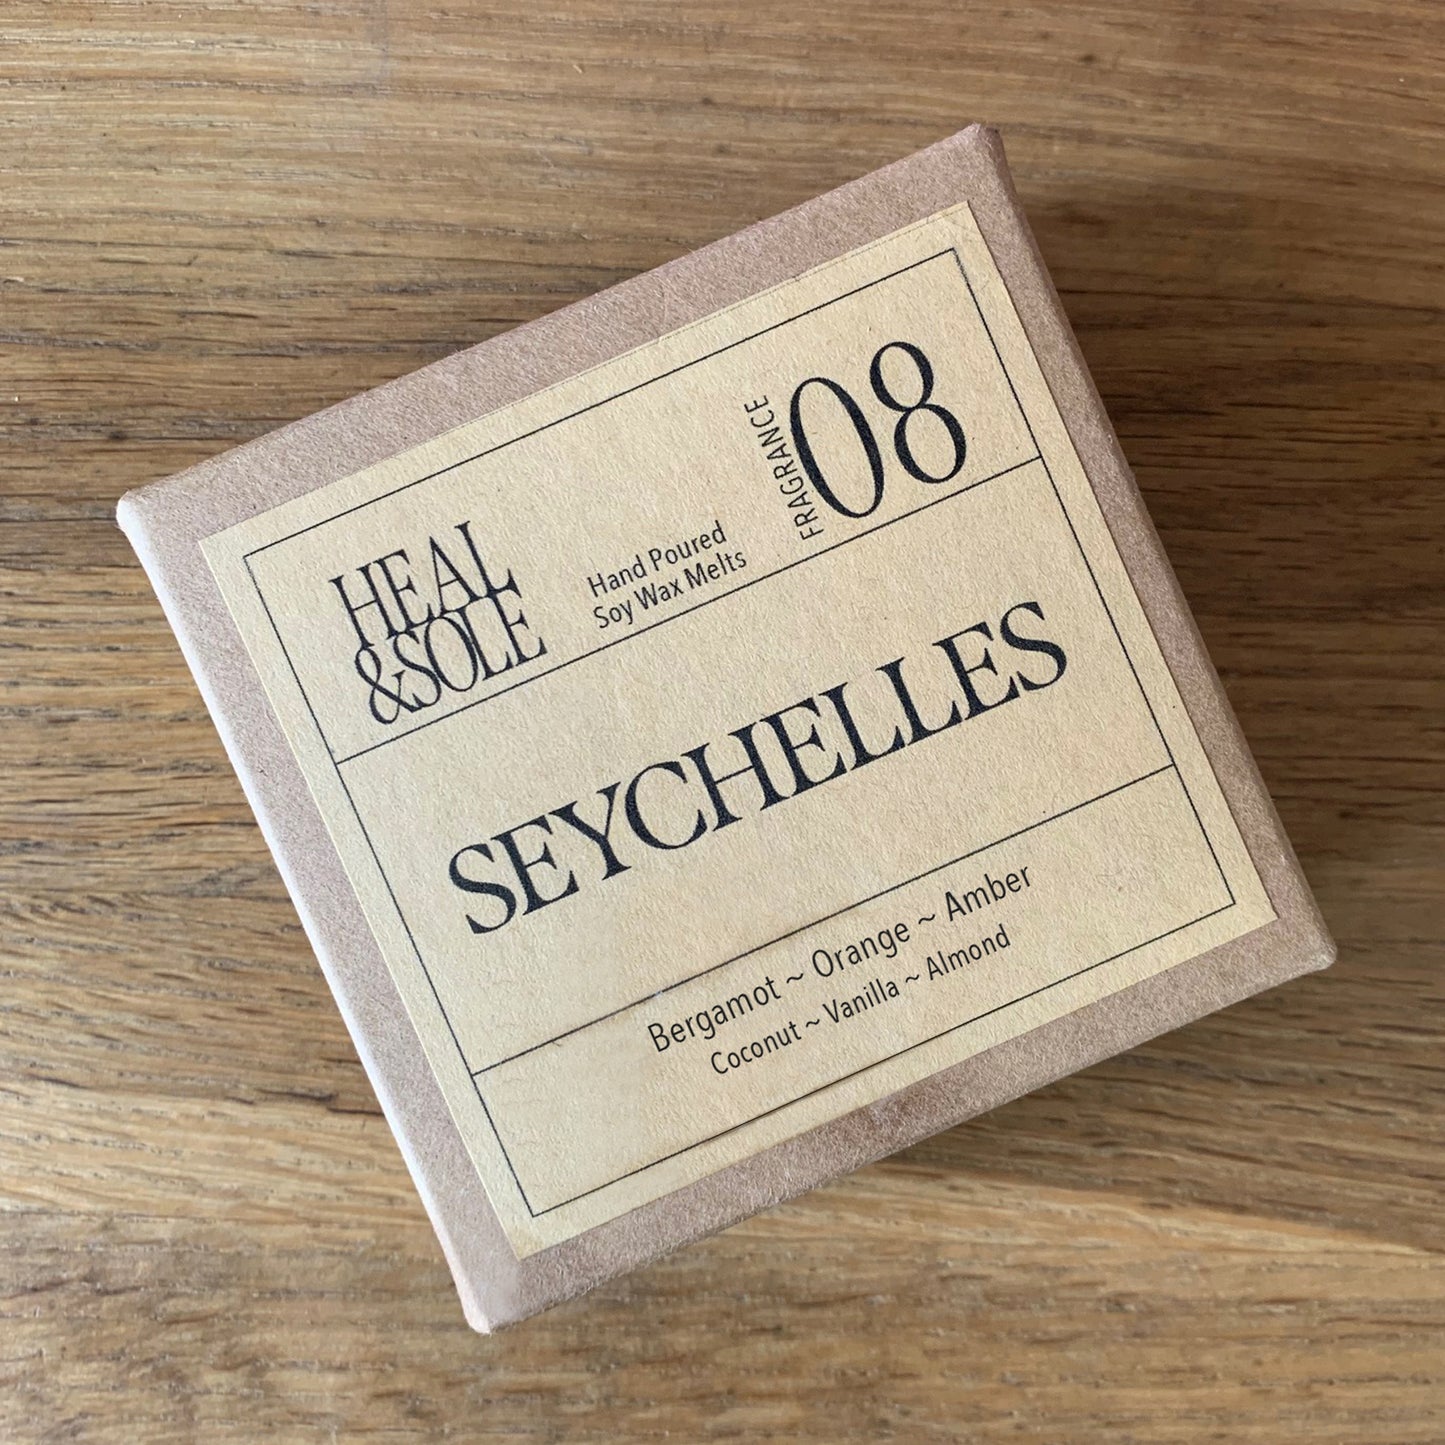 Seychelles Wax Melts